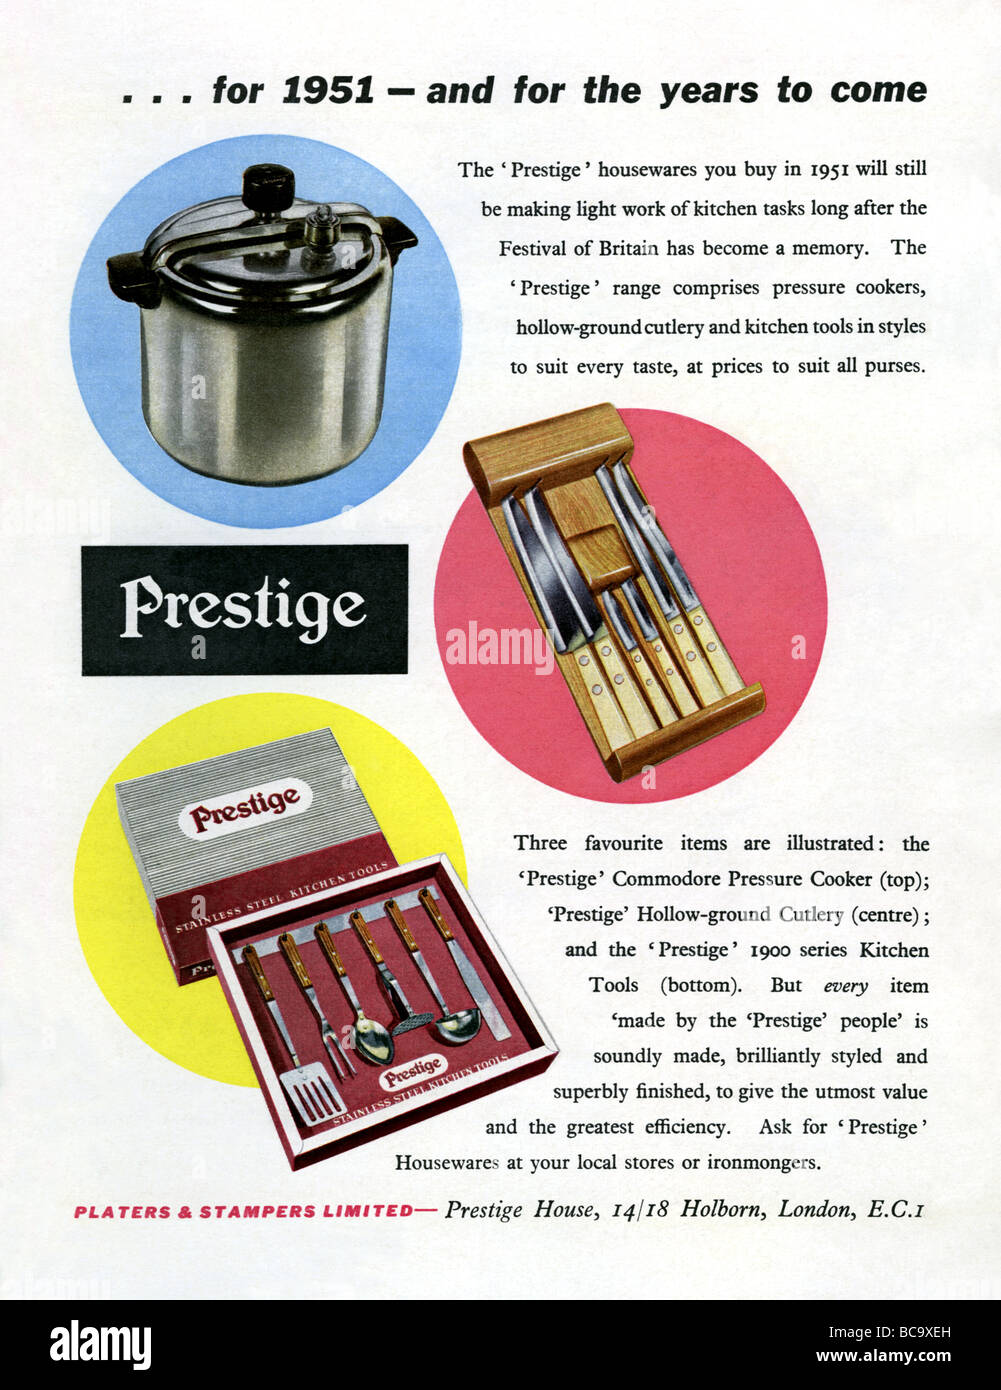 1951 pubblicità a colori per il prestigio di stoviglie Foto Stock